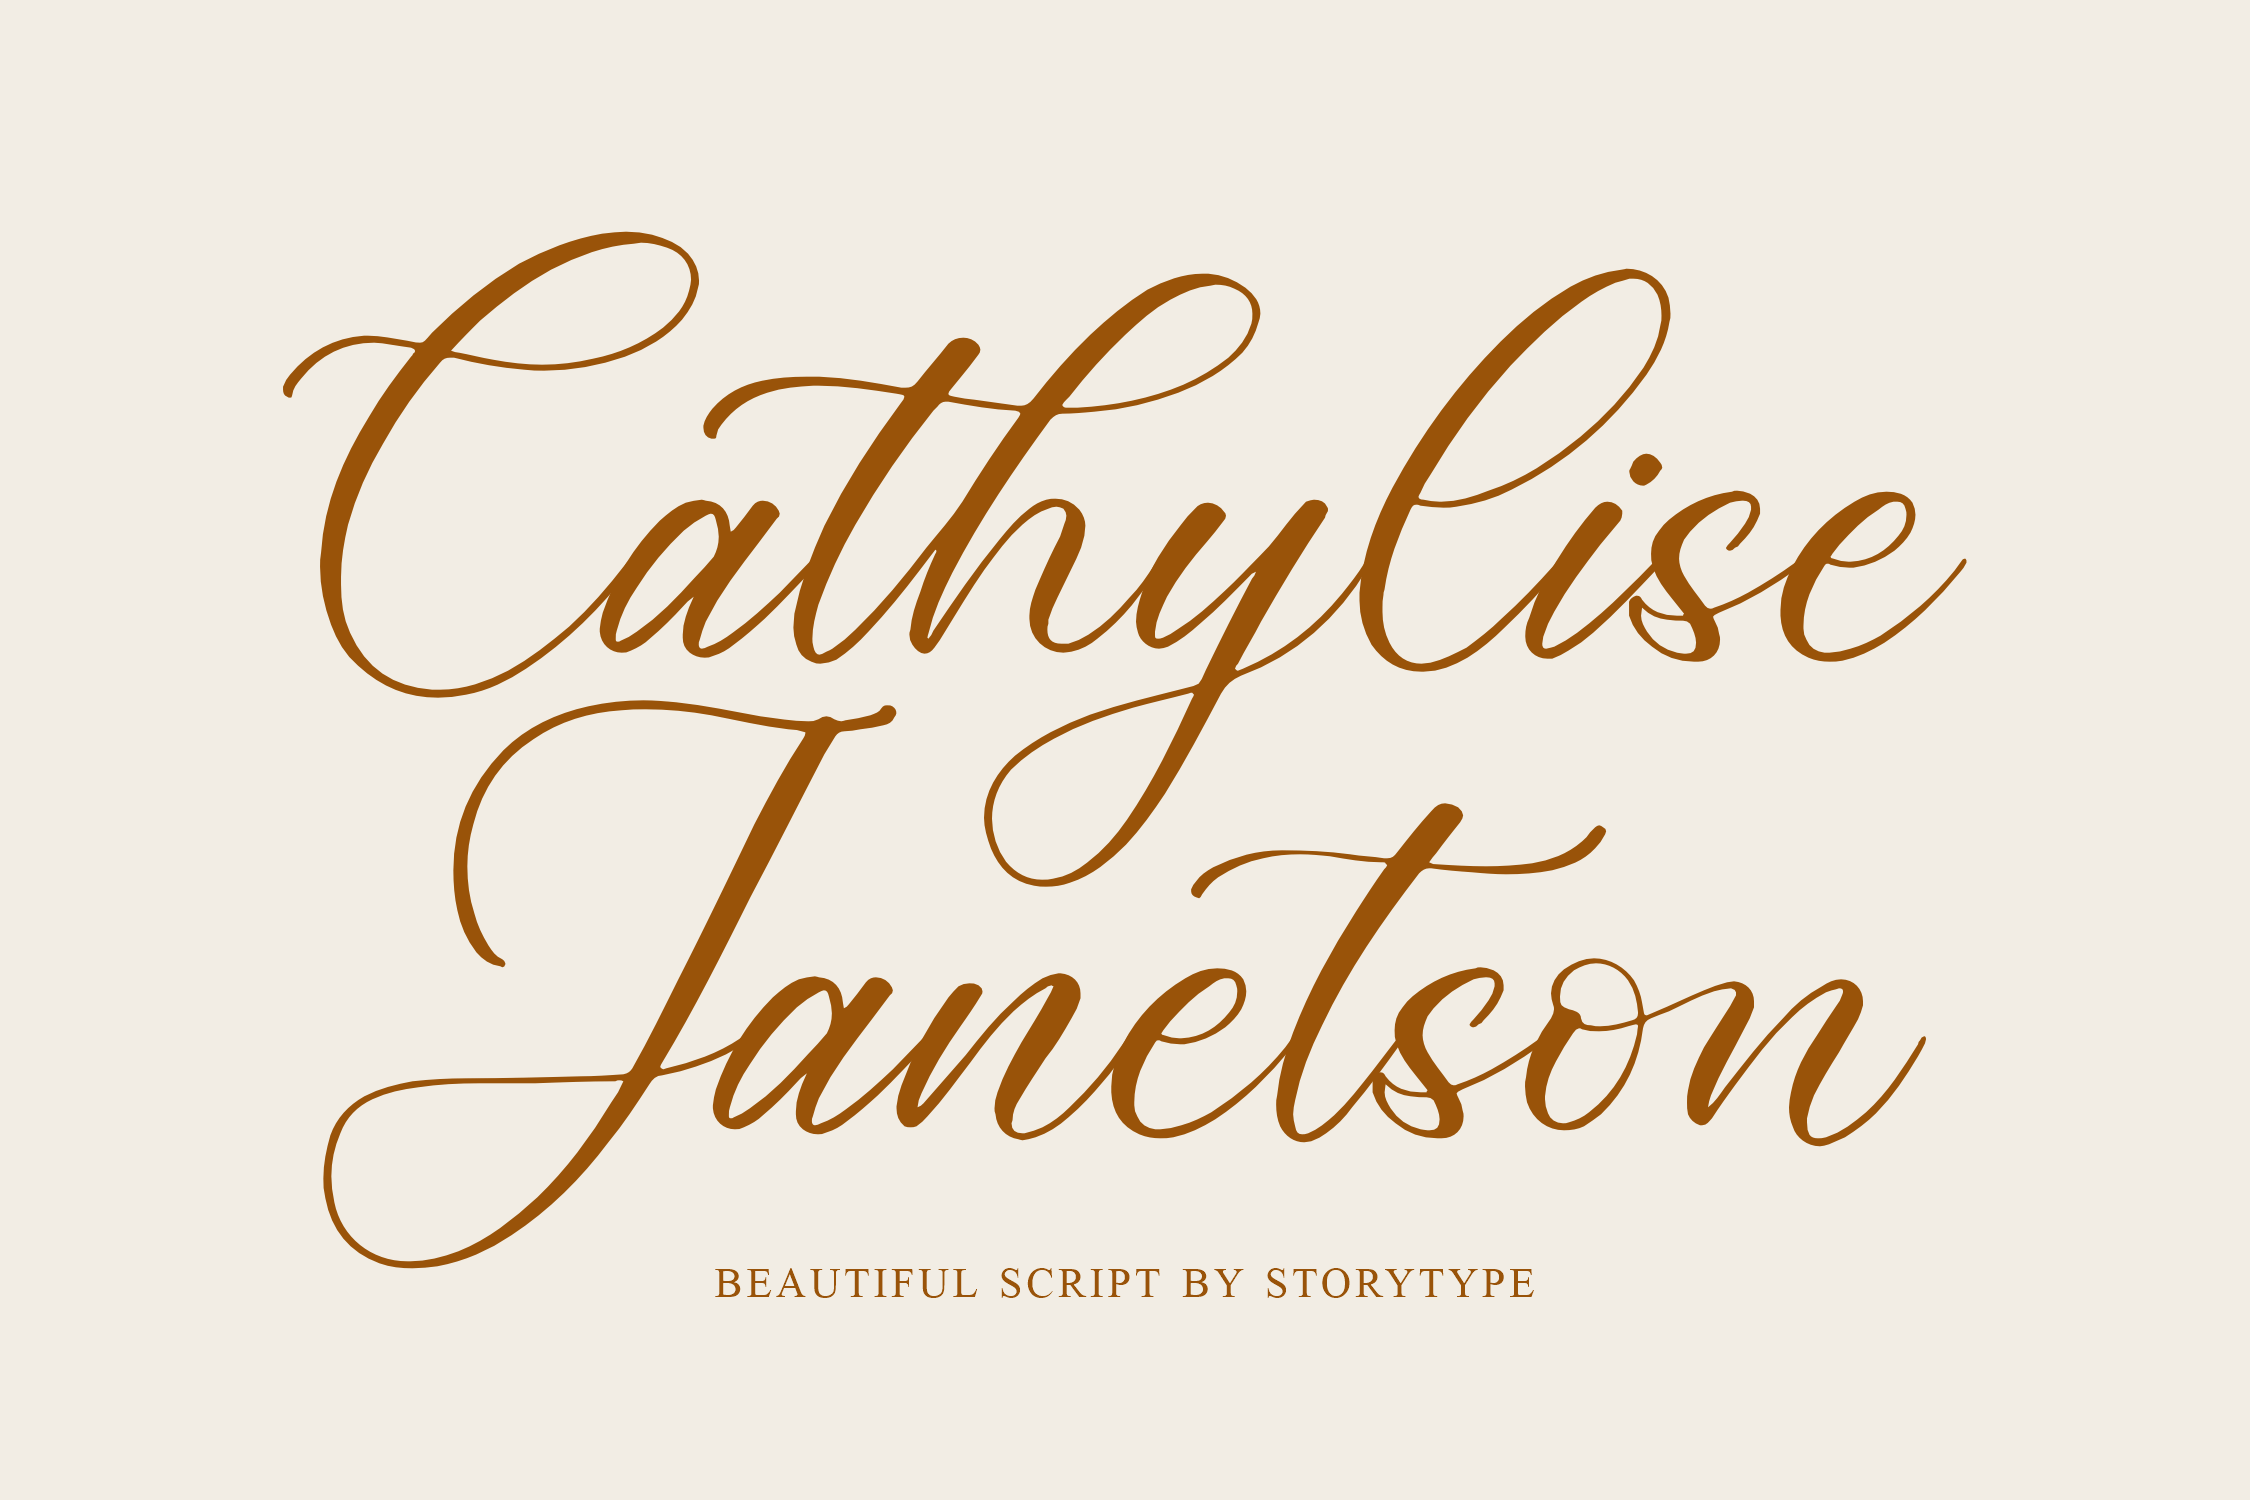 Cathylise Janetson